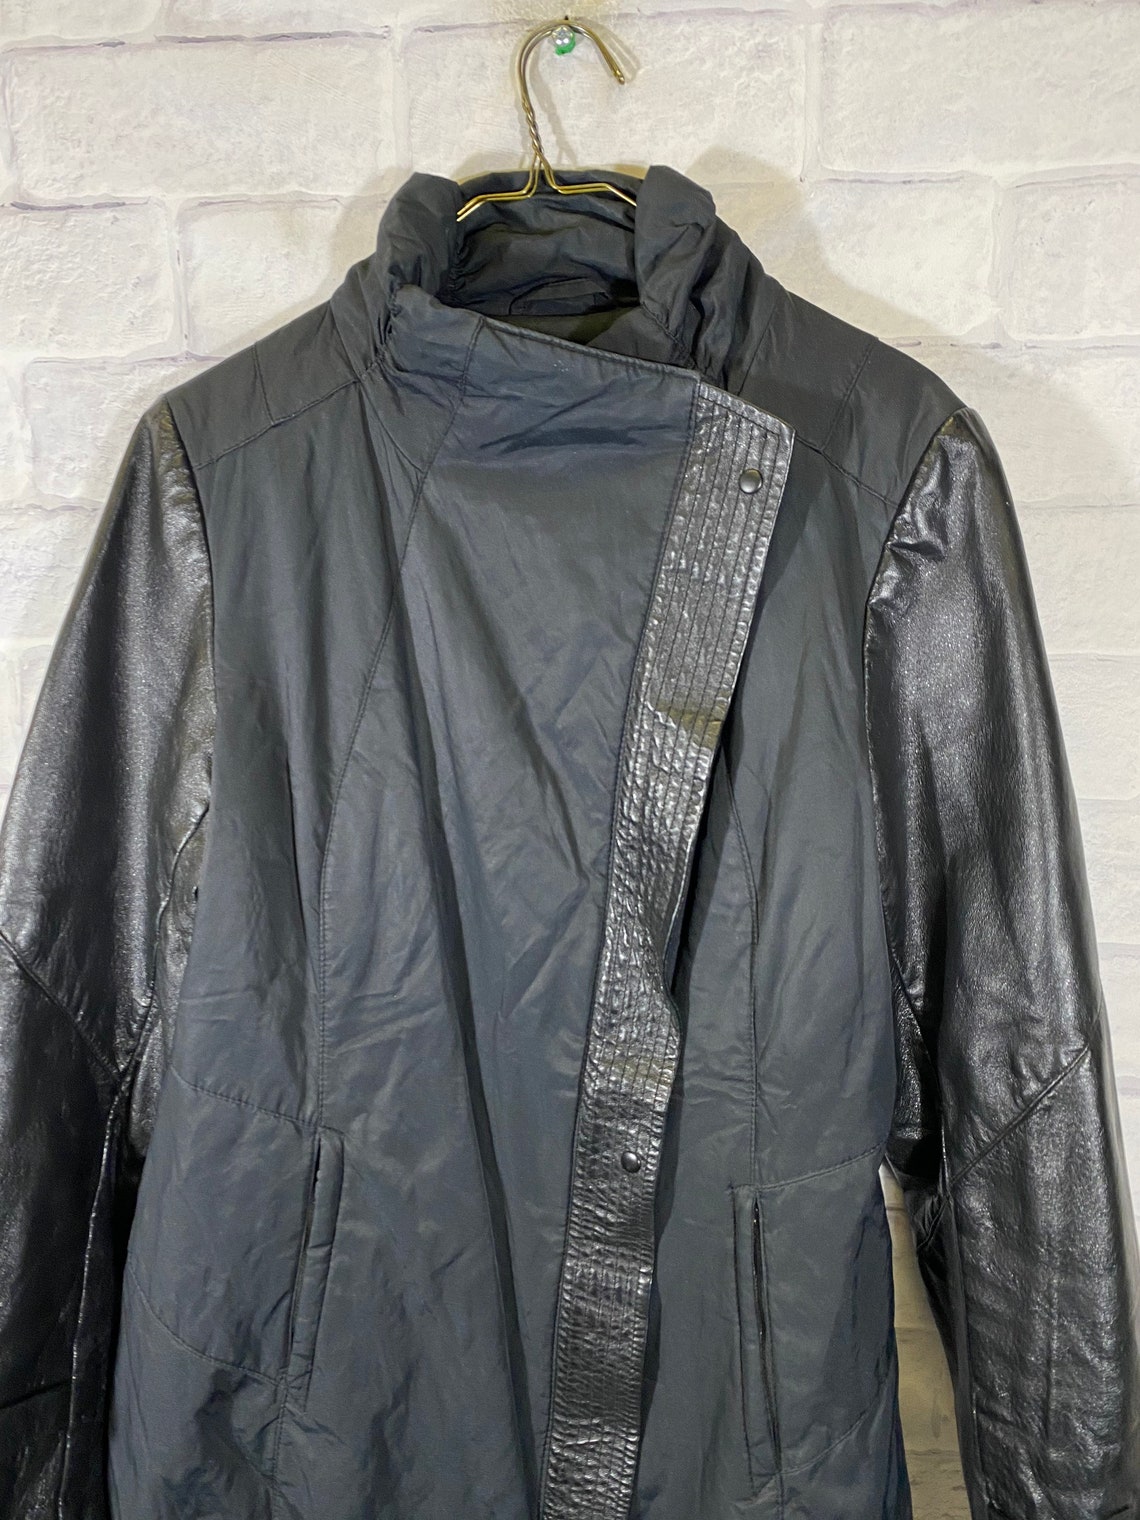 Vintage 90s Danier fullzip authentic leather jacket | Etsy